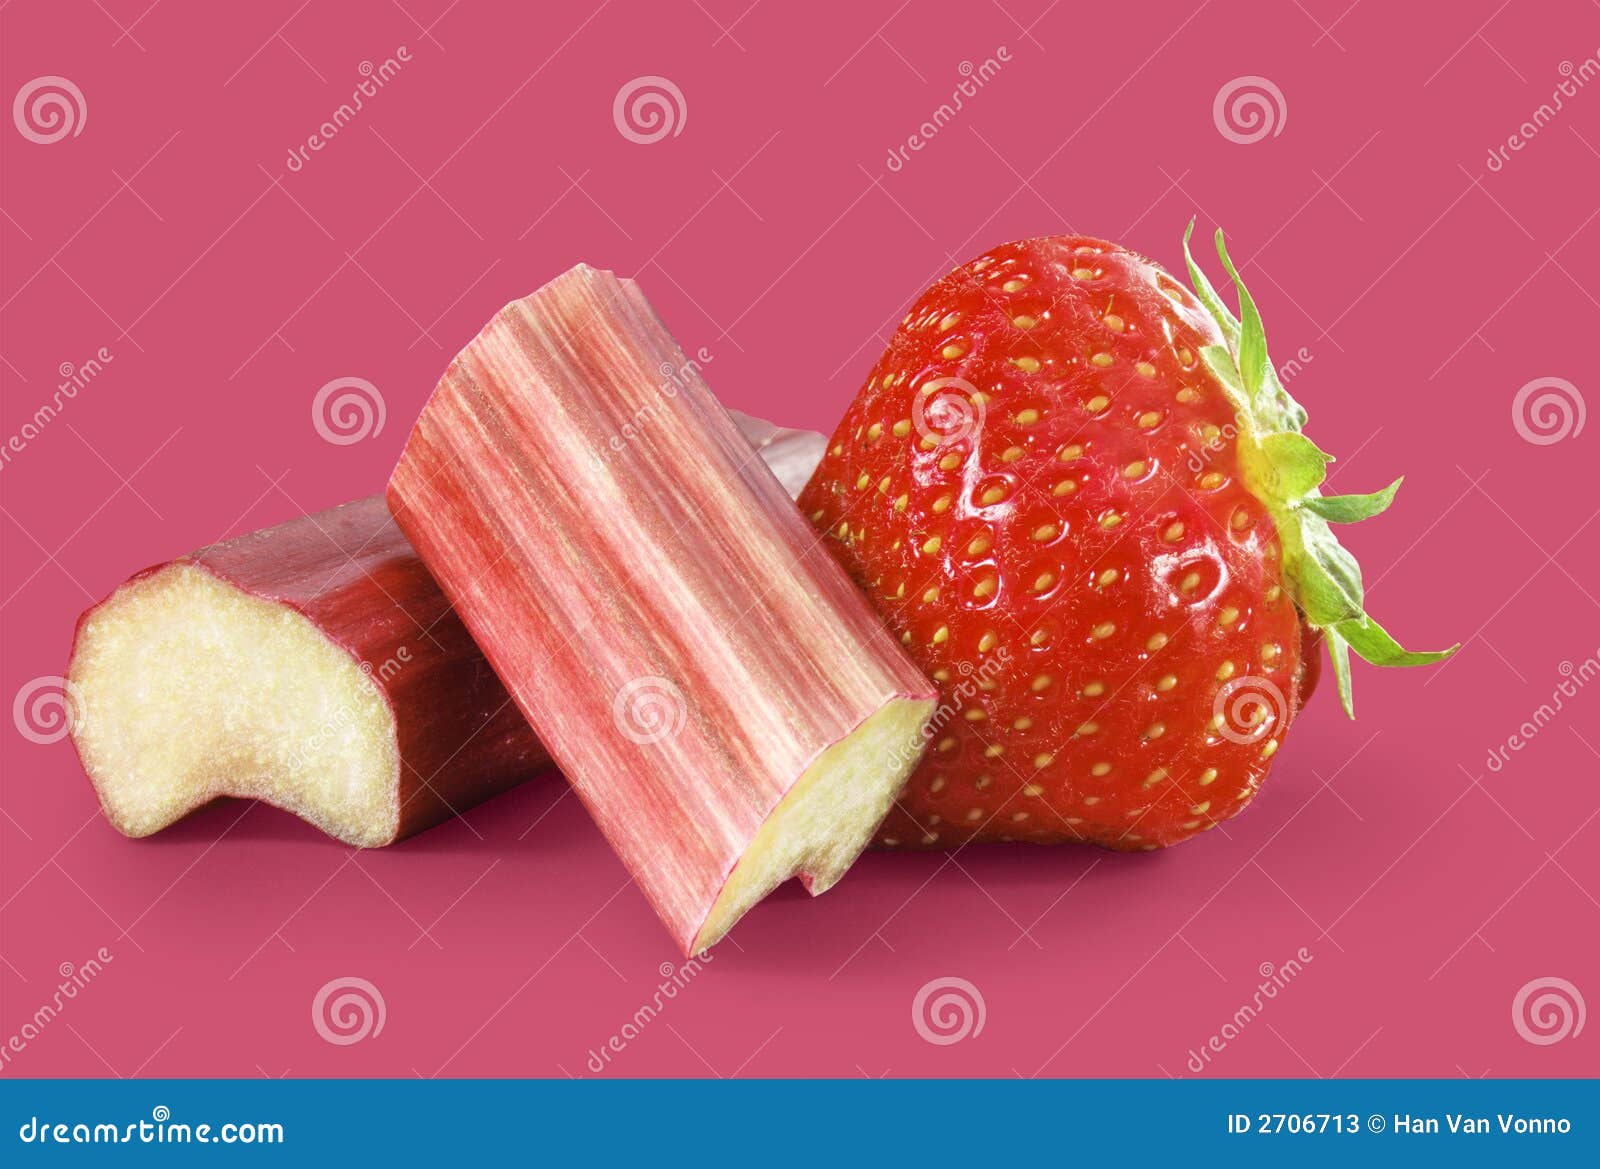 strawberry rhubarb